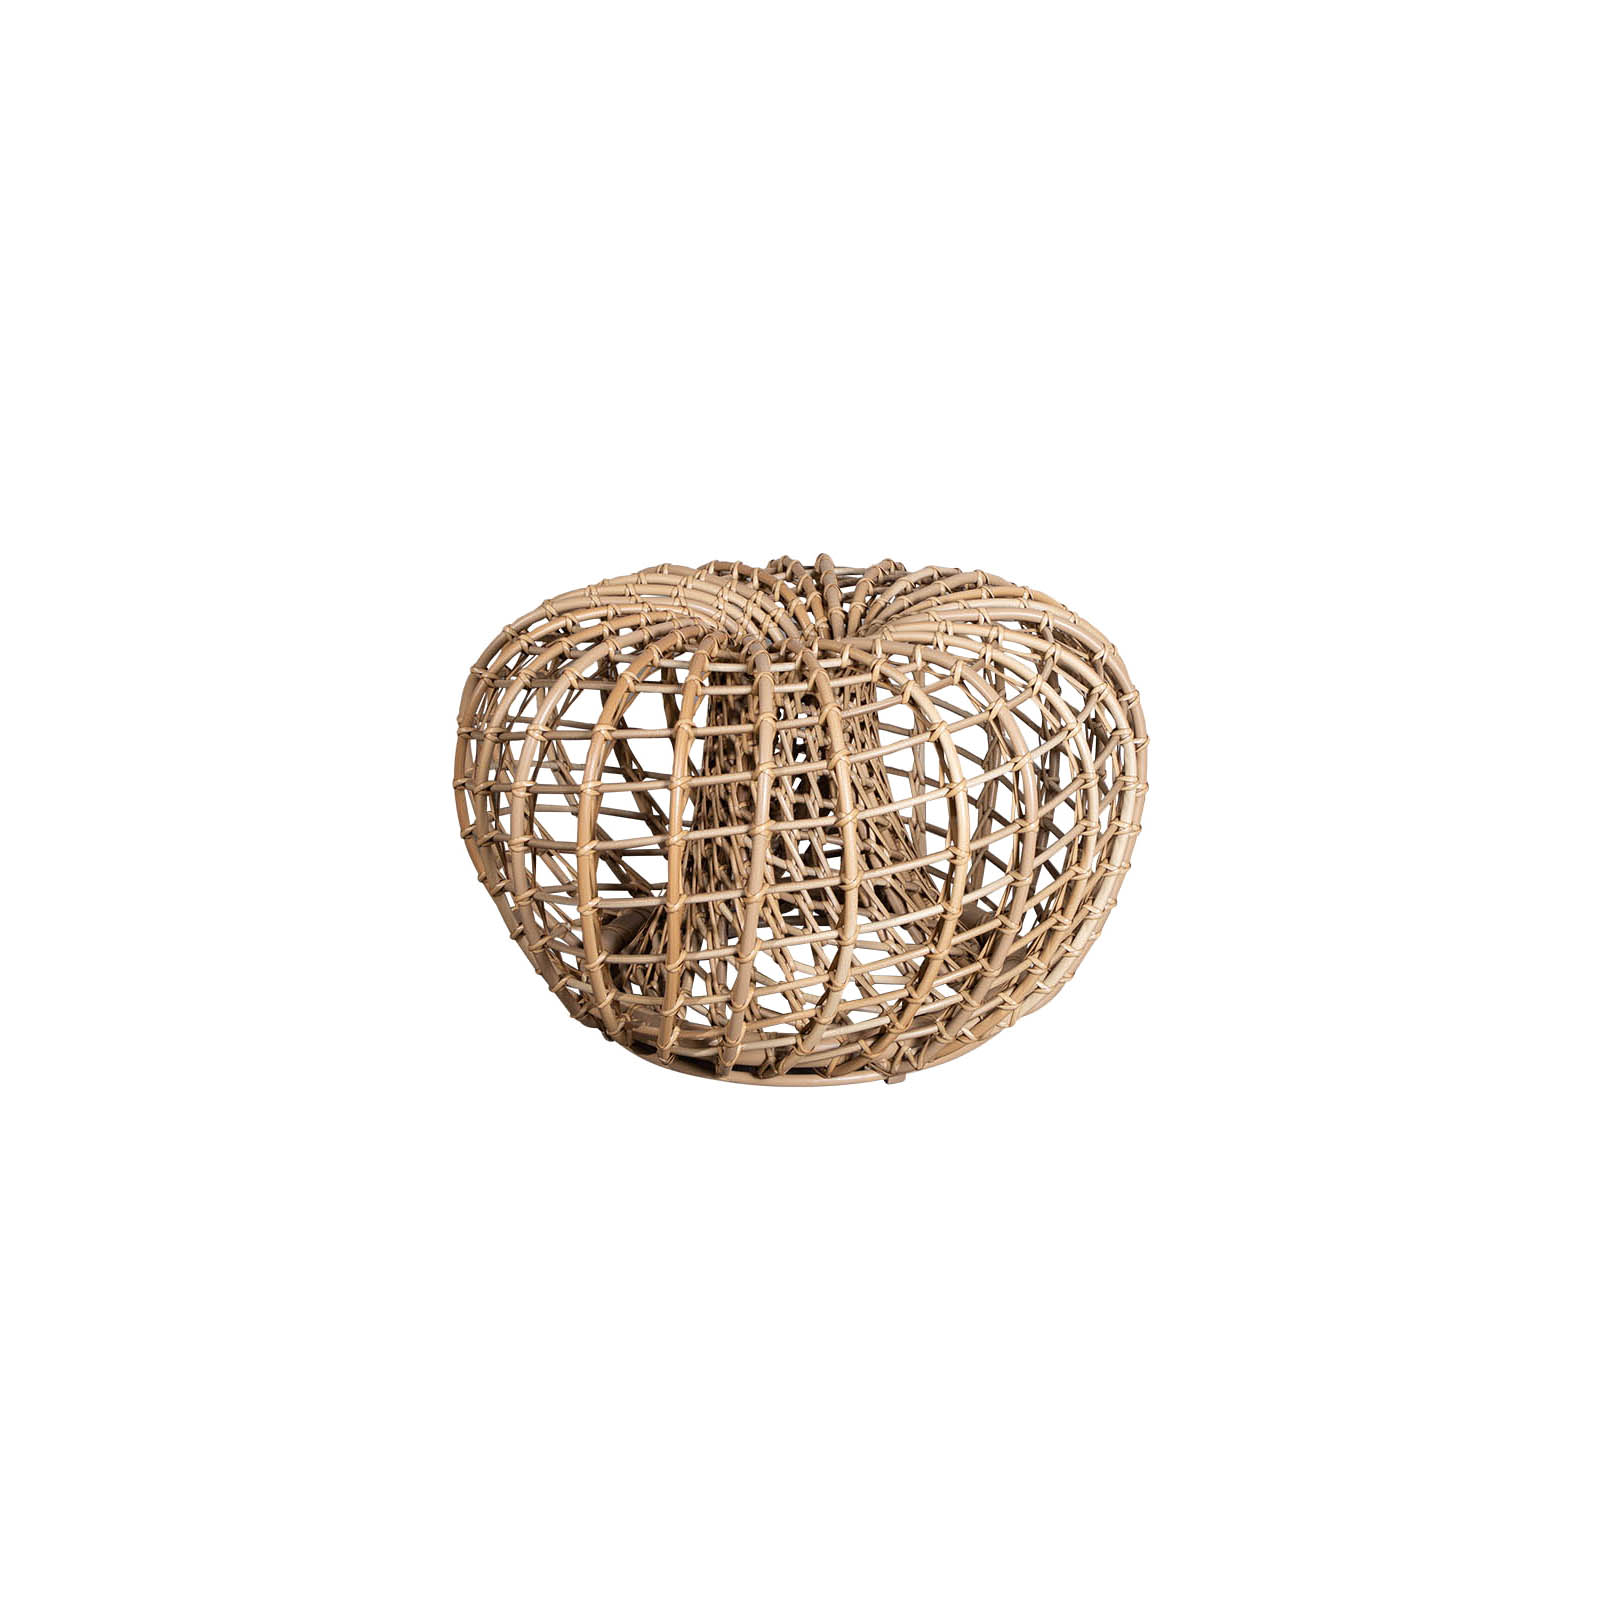 Nest Couchtisch oder Hocker kein mit Durchmesser 67 cm aus Cane-line Weave in Natural